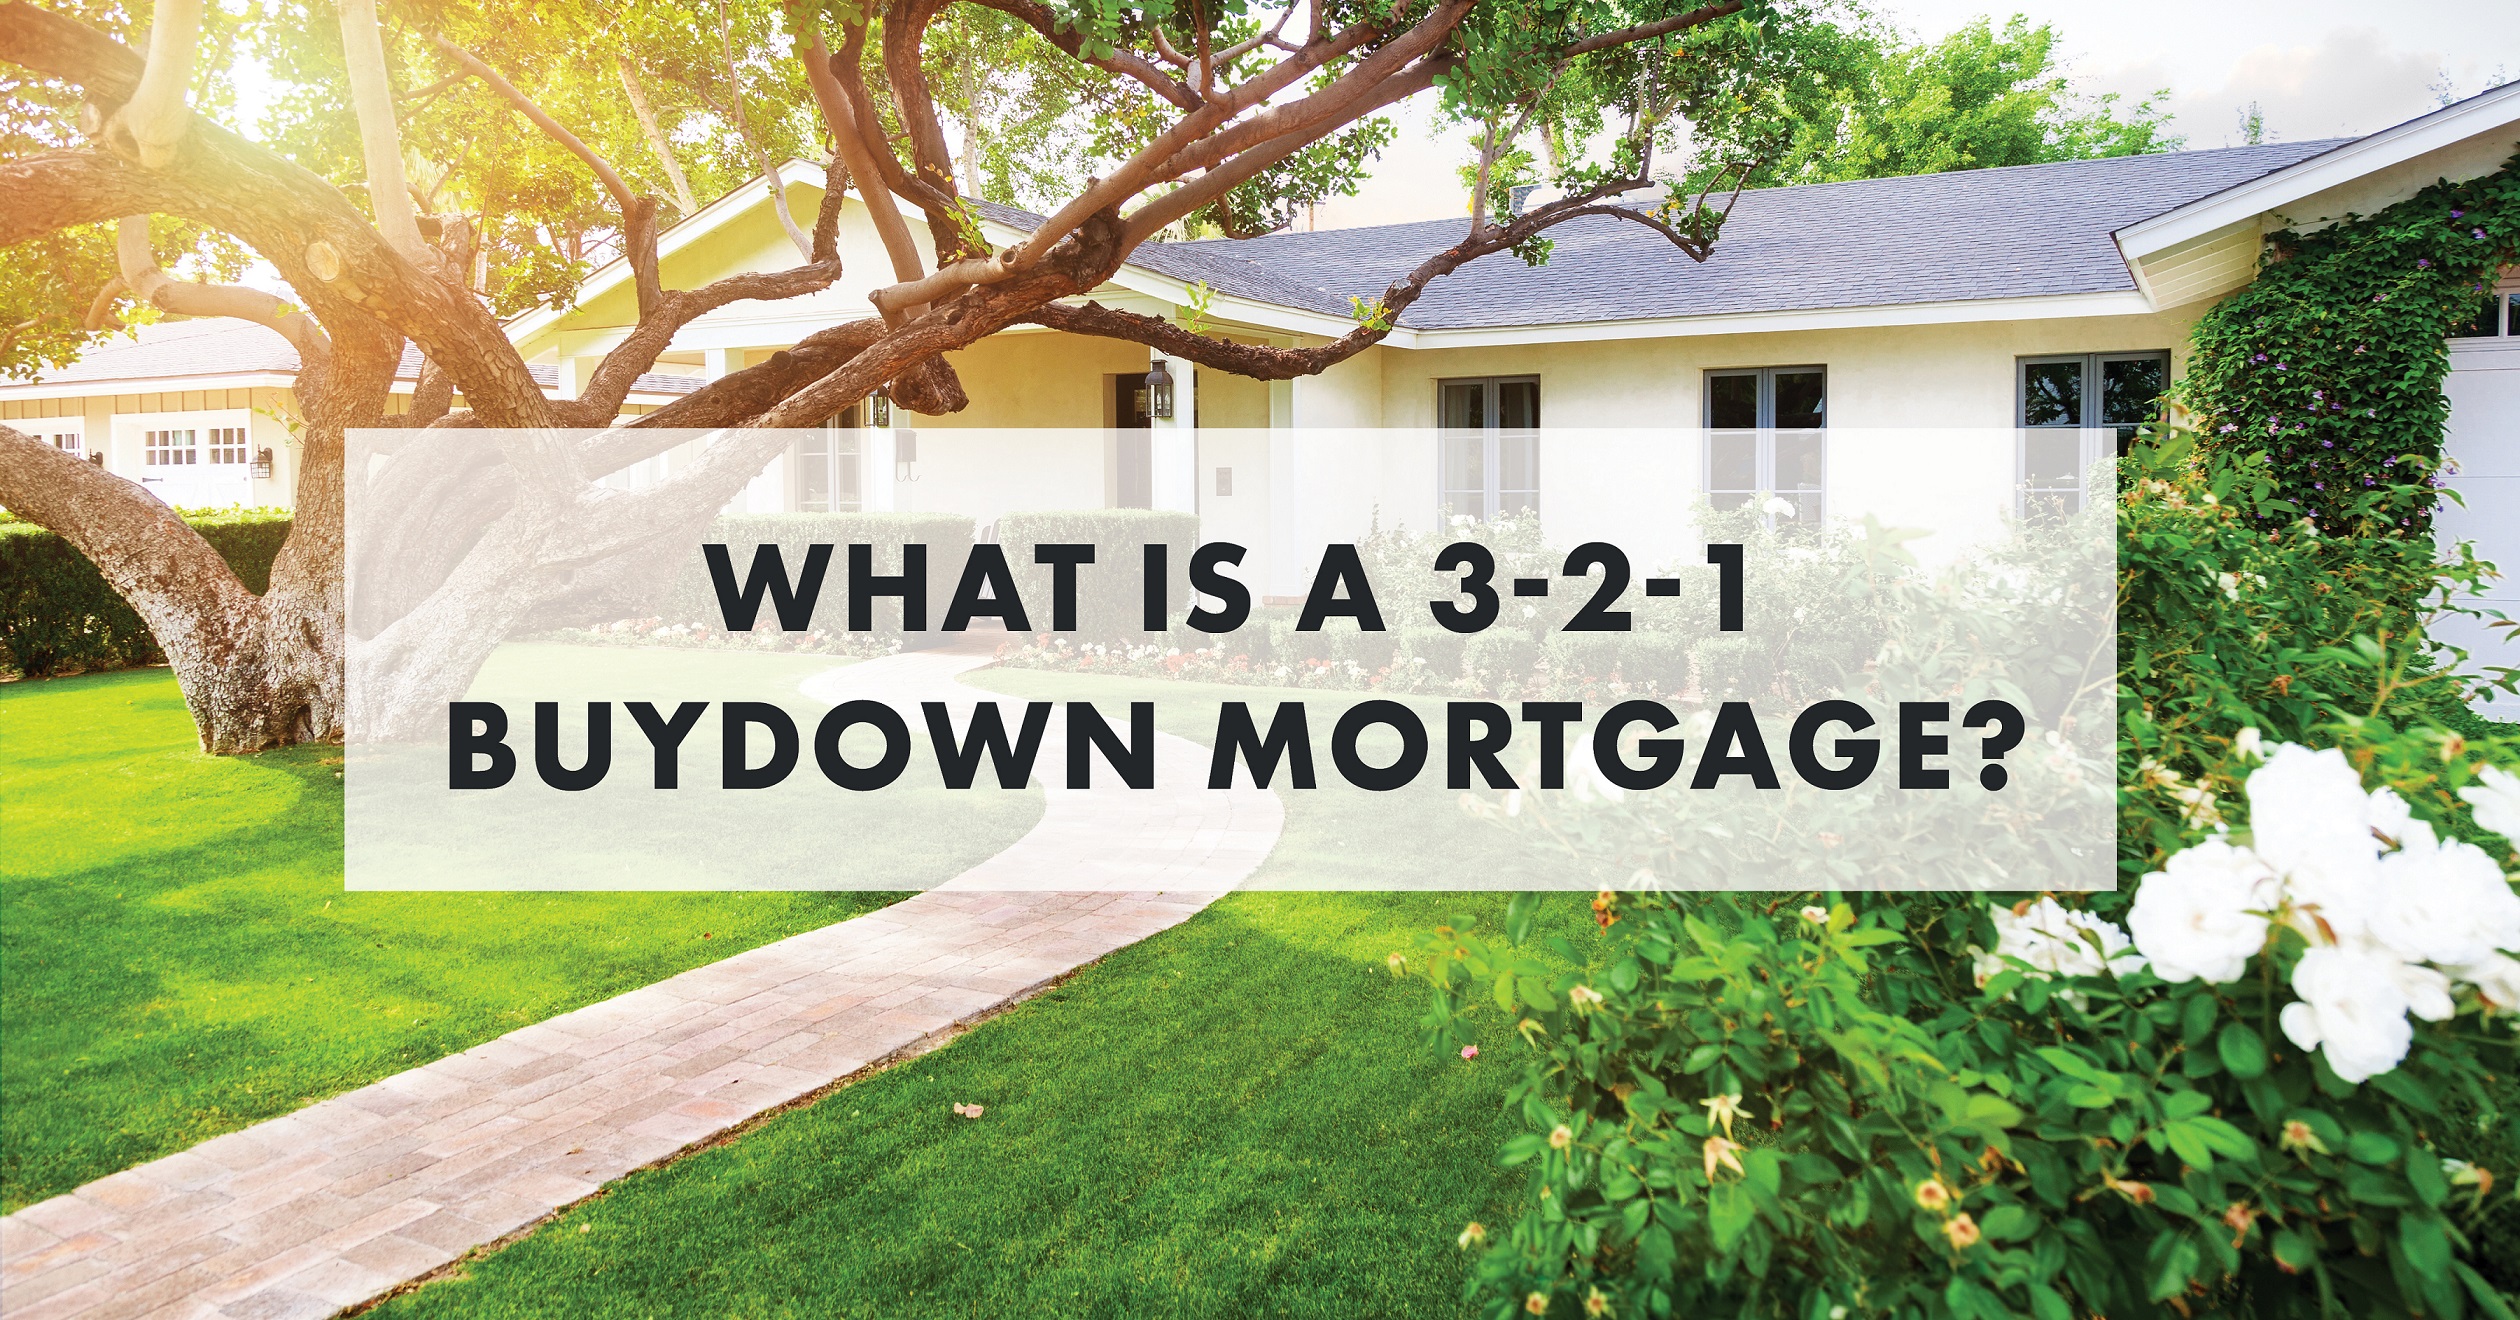 Mortgage Buydown Image